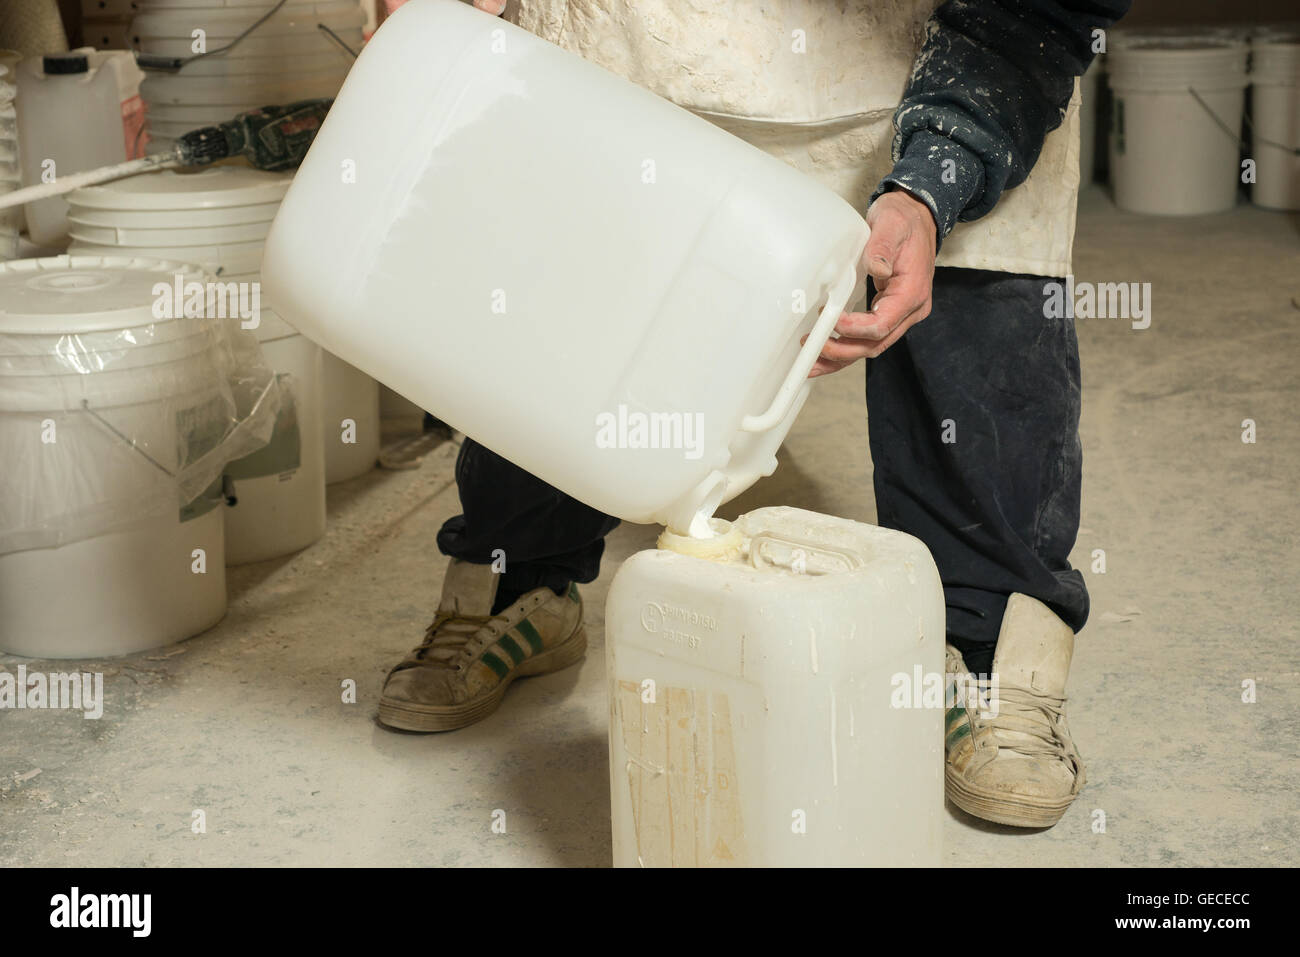 Un homme versant plâtre liquide résine dans un grand récipient en plastique blanc Banque D'Images